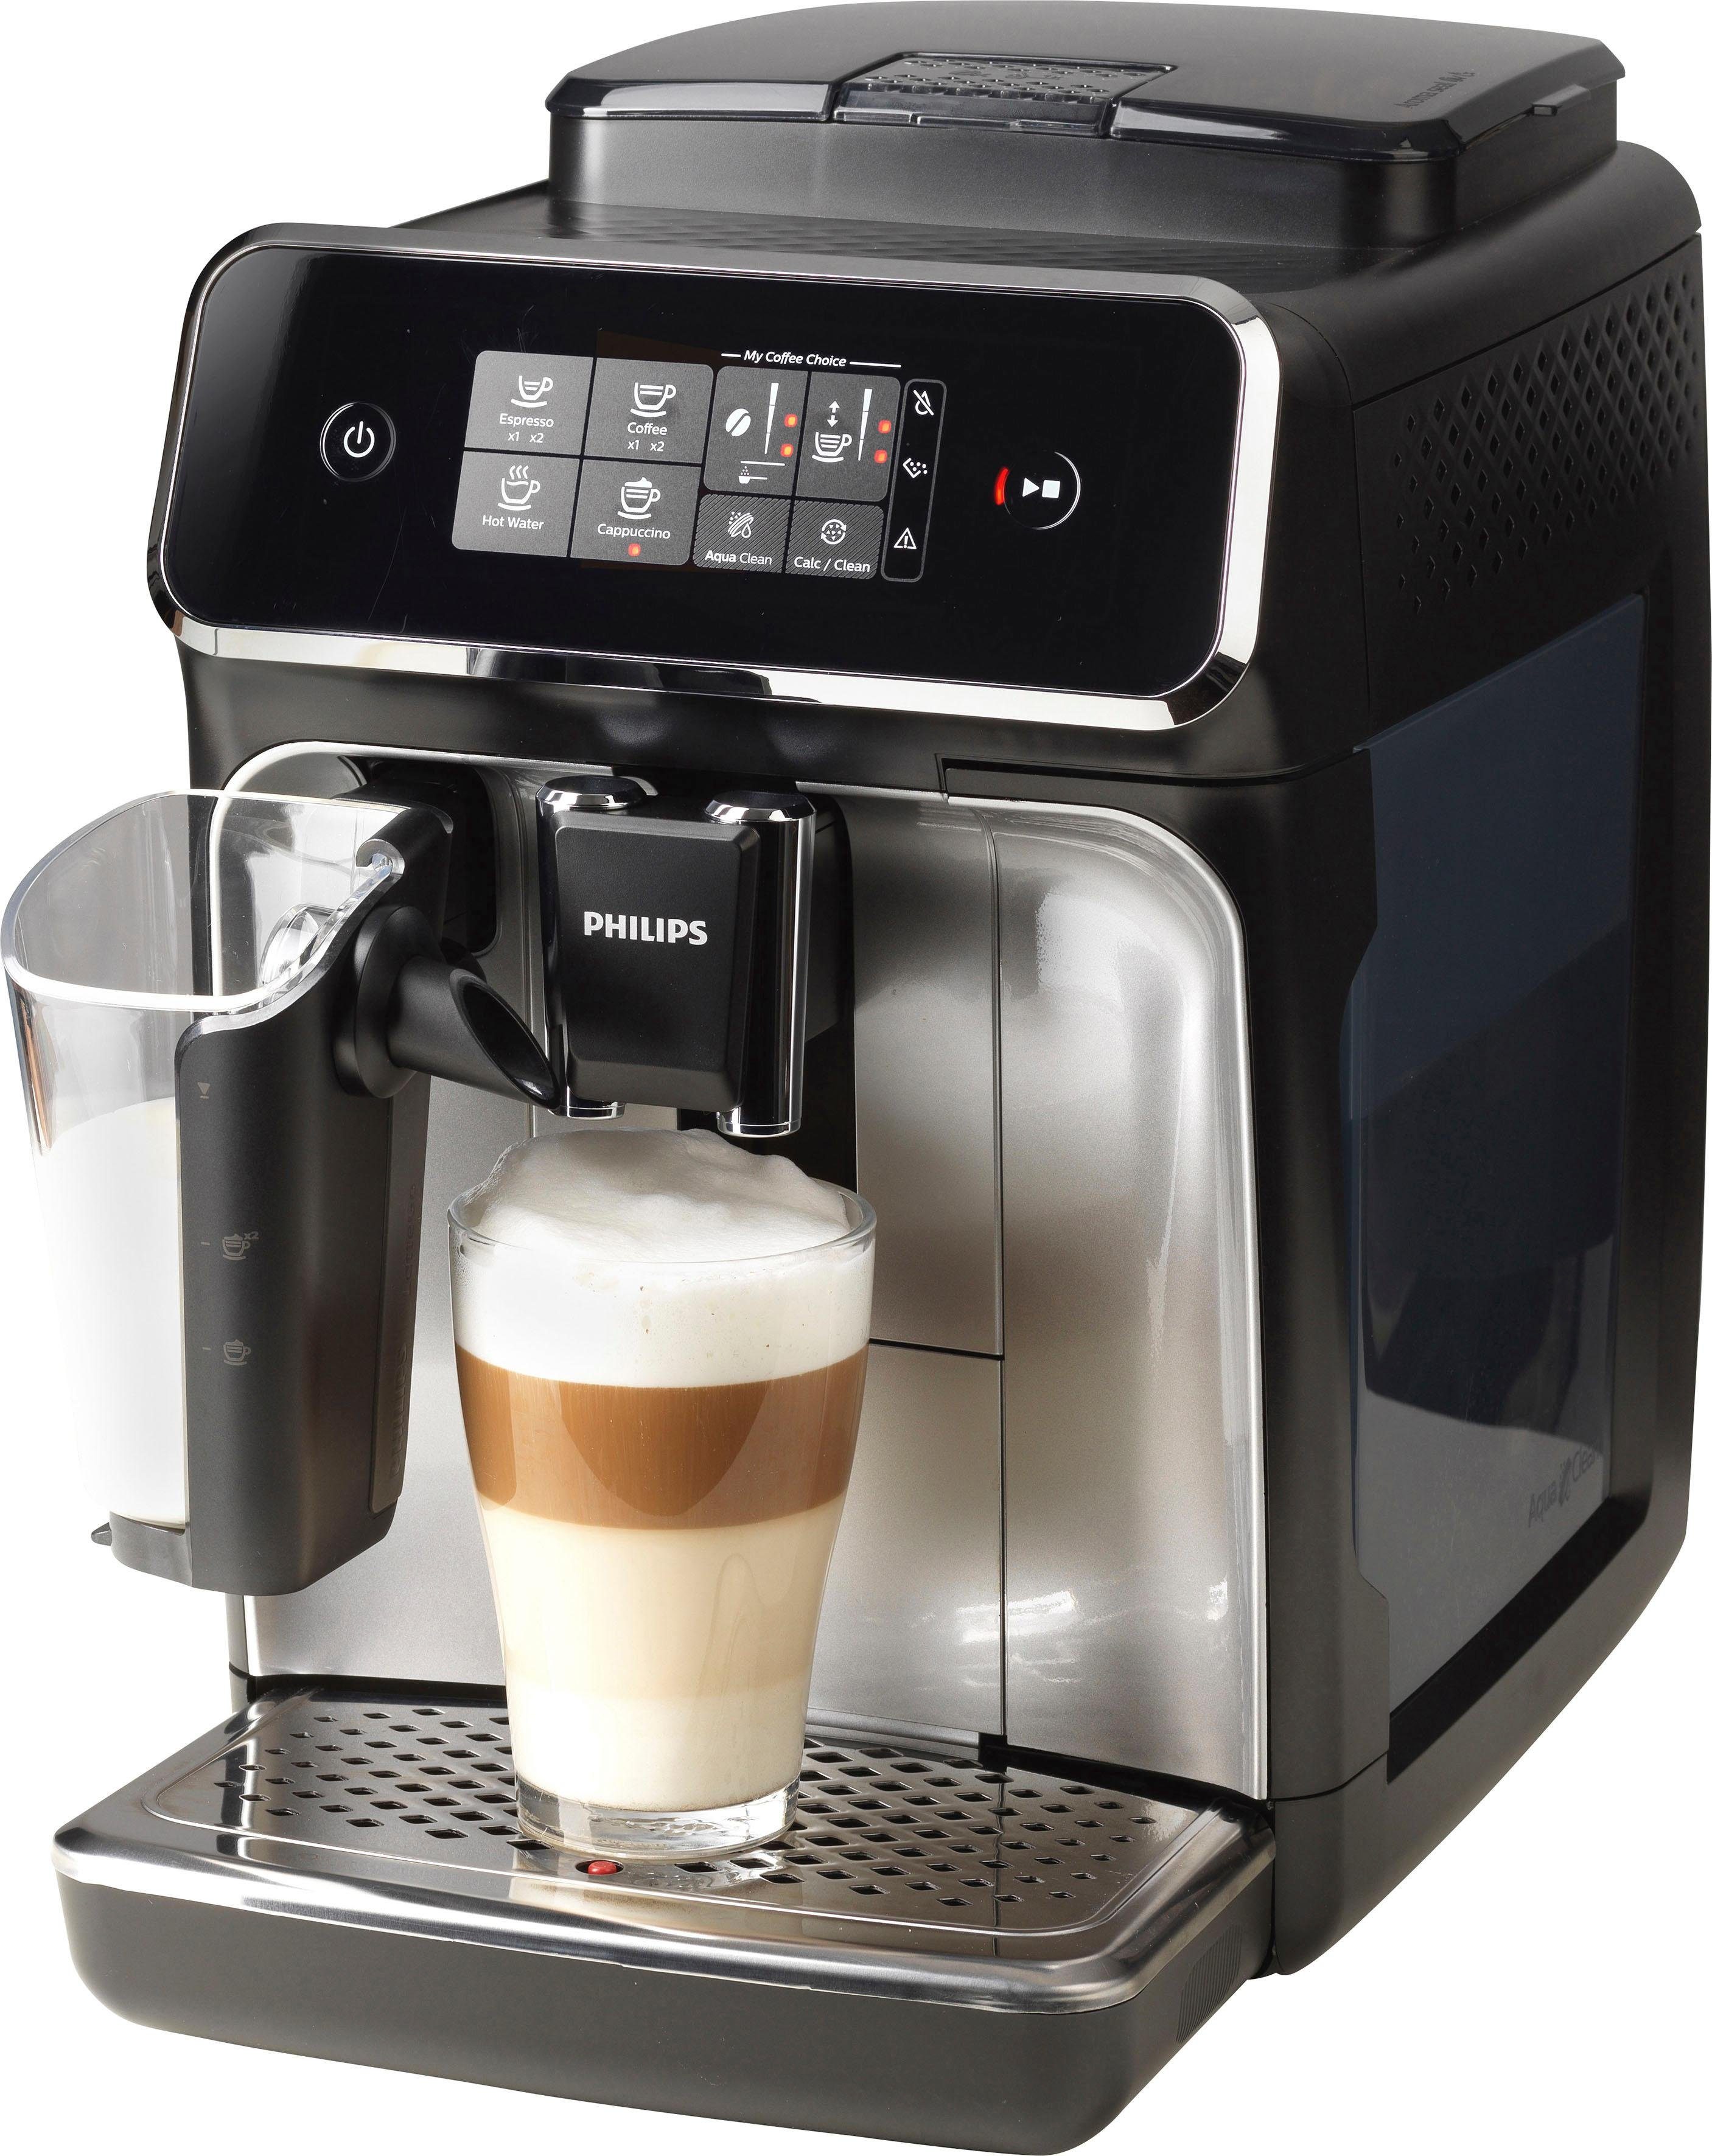 Philips Kaffeevollautomat LatteGo, für zur SensorTouch und anpassbarer Intuitive matt-schwarz, EP2236/40 Auswahl des 2200 3 Serie Oberfläche Stärke, Kaffeespezialitäten Lieblingsgetränks